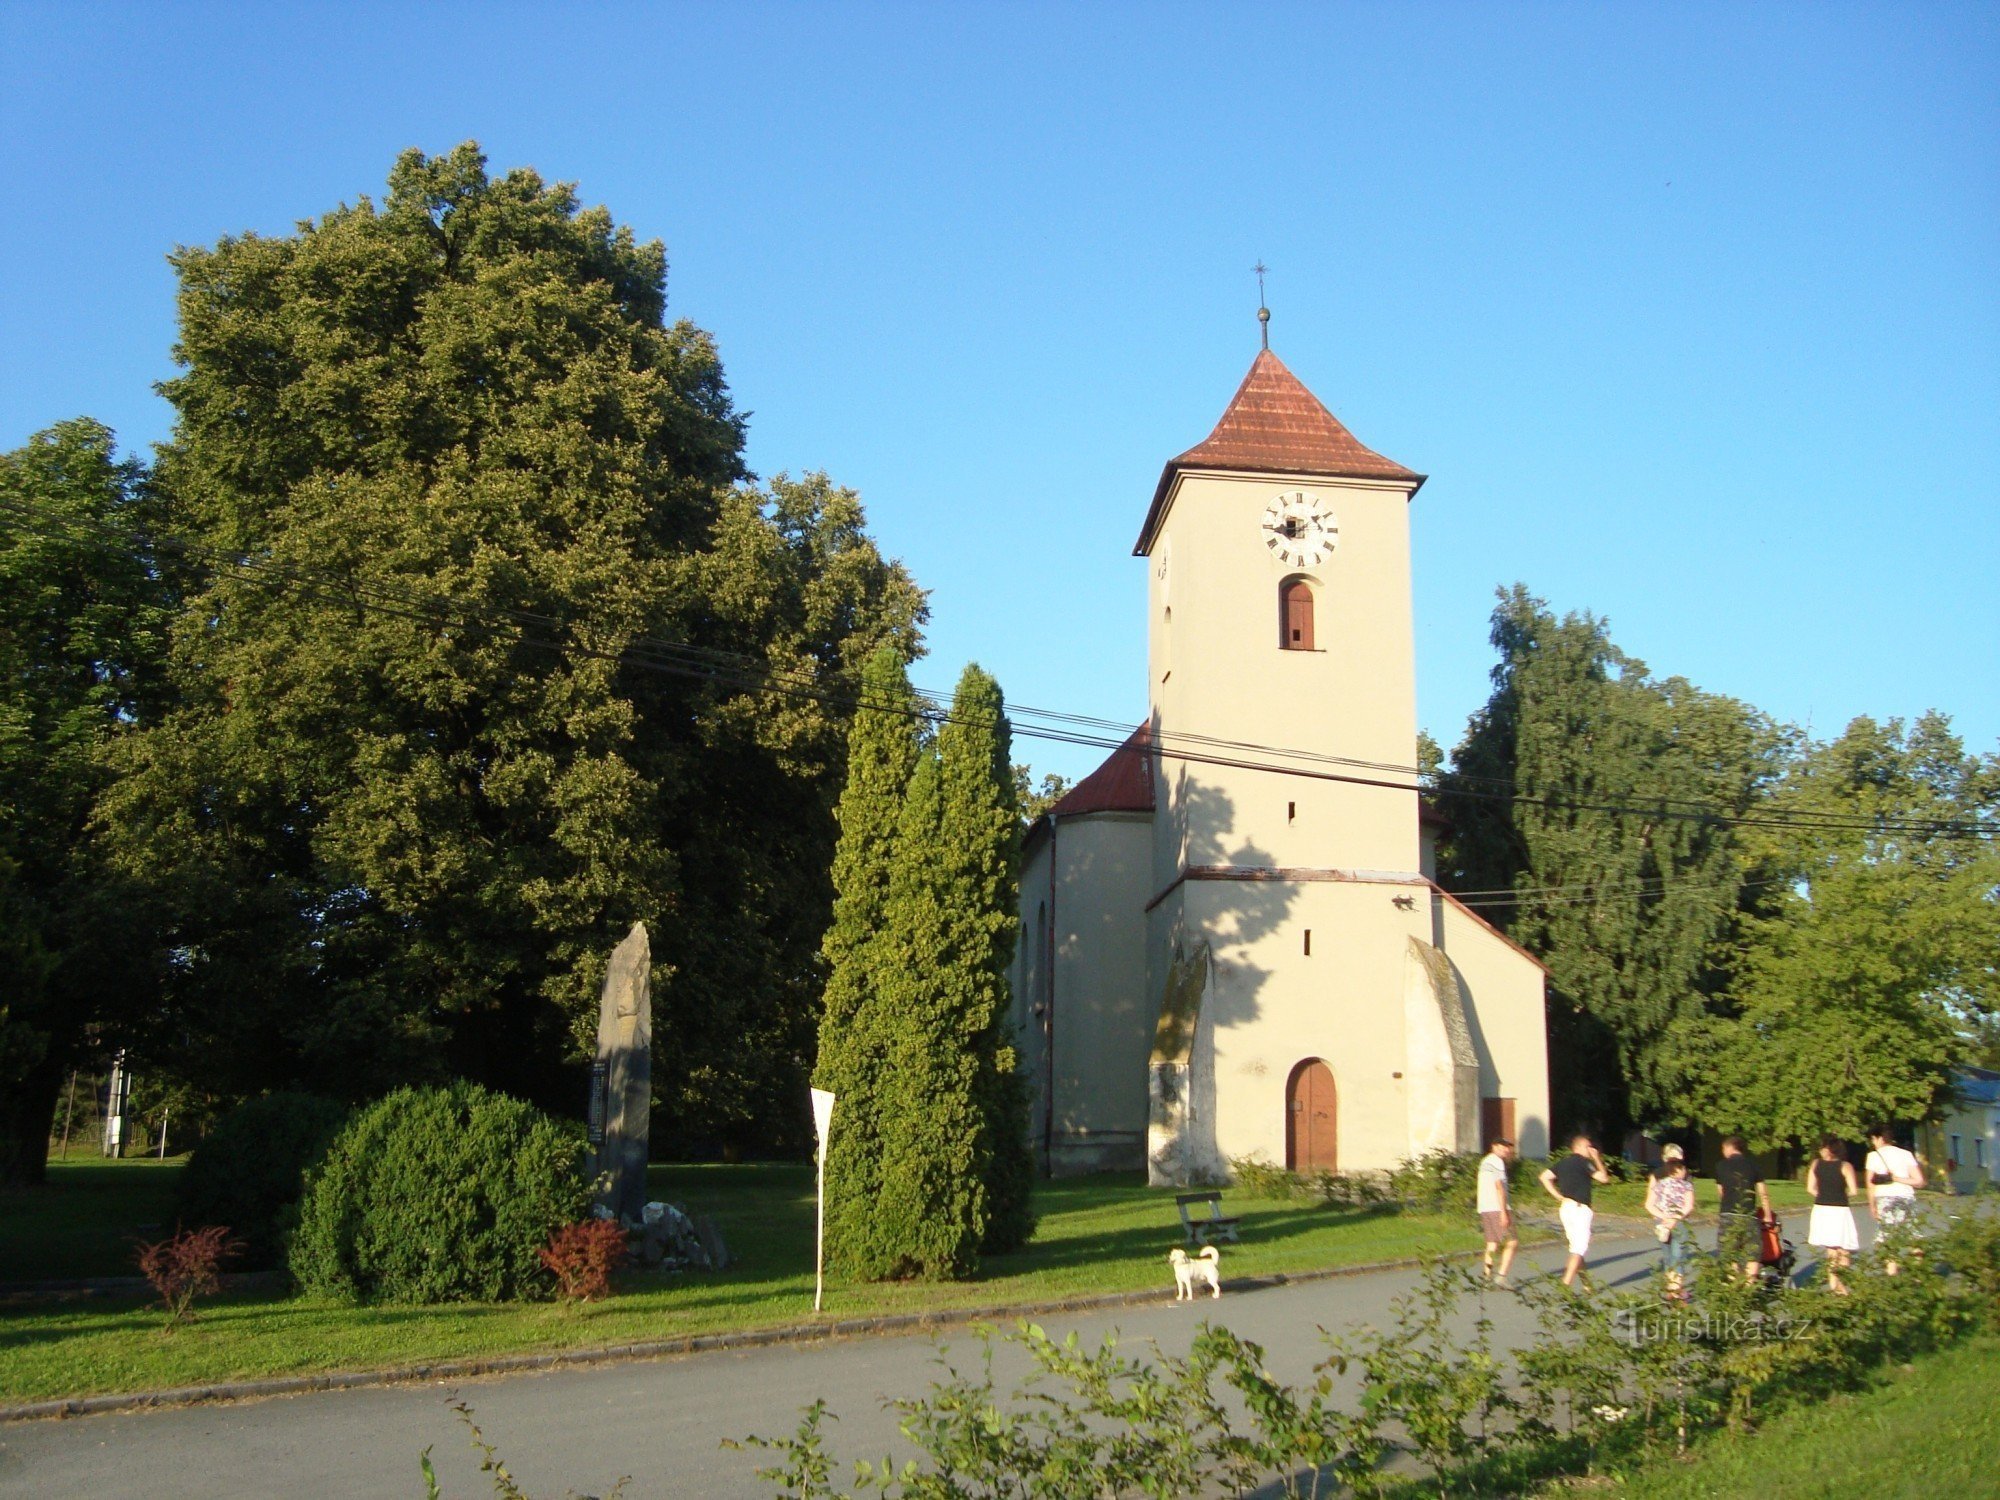 Domašov lângă Šternberka - casă semi-decomandată cu parc și biserica Sf. Martin - Foto: Ulrych Mir.